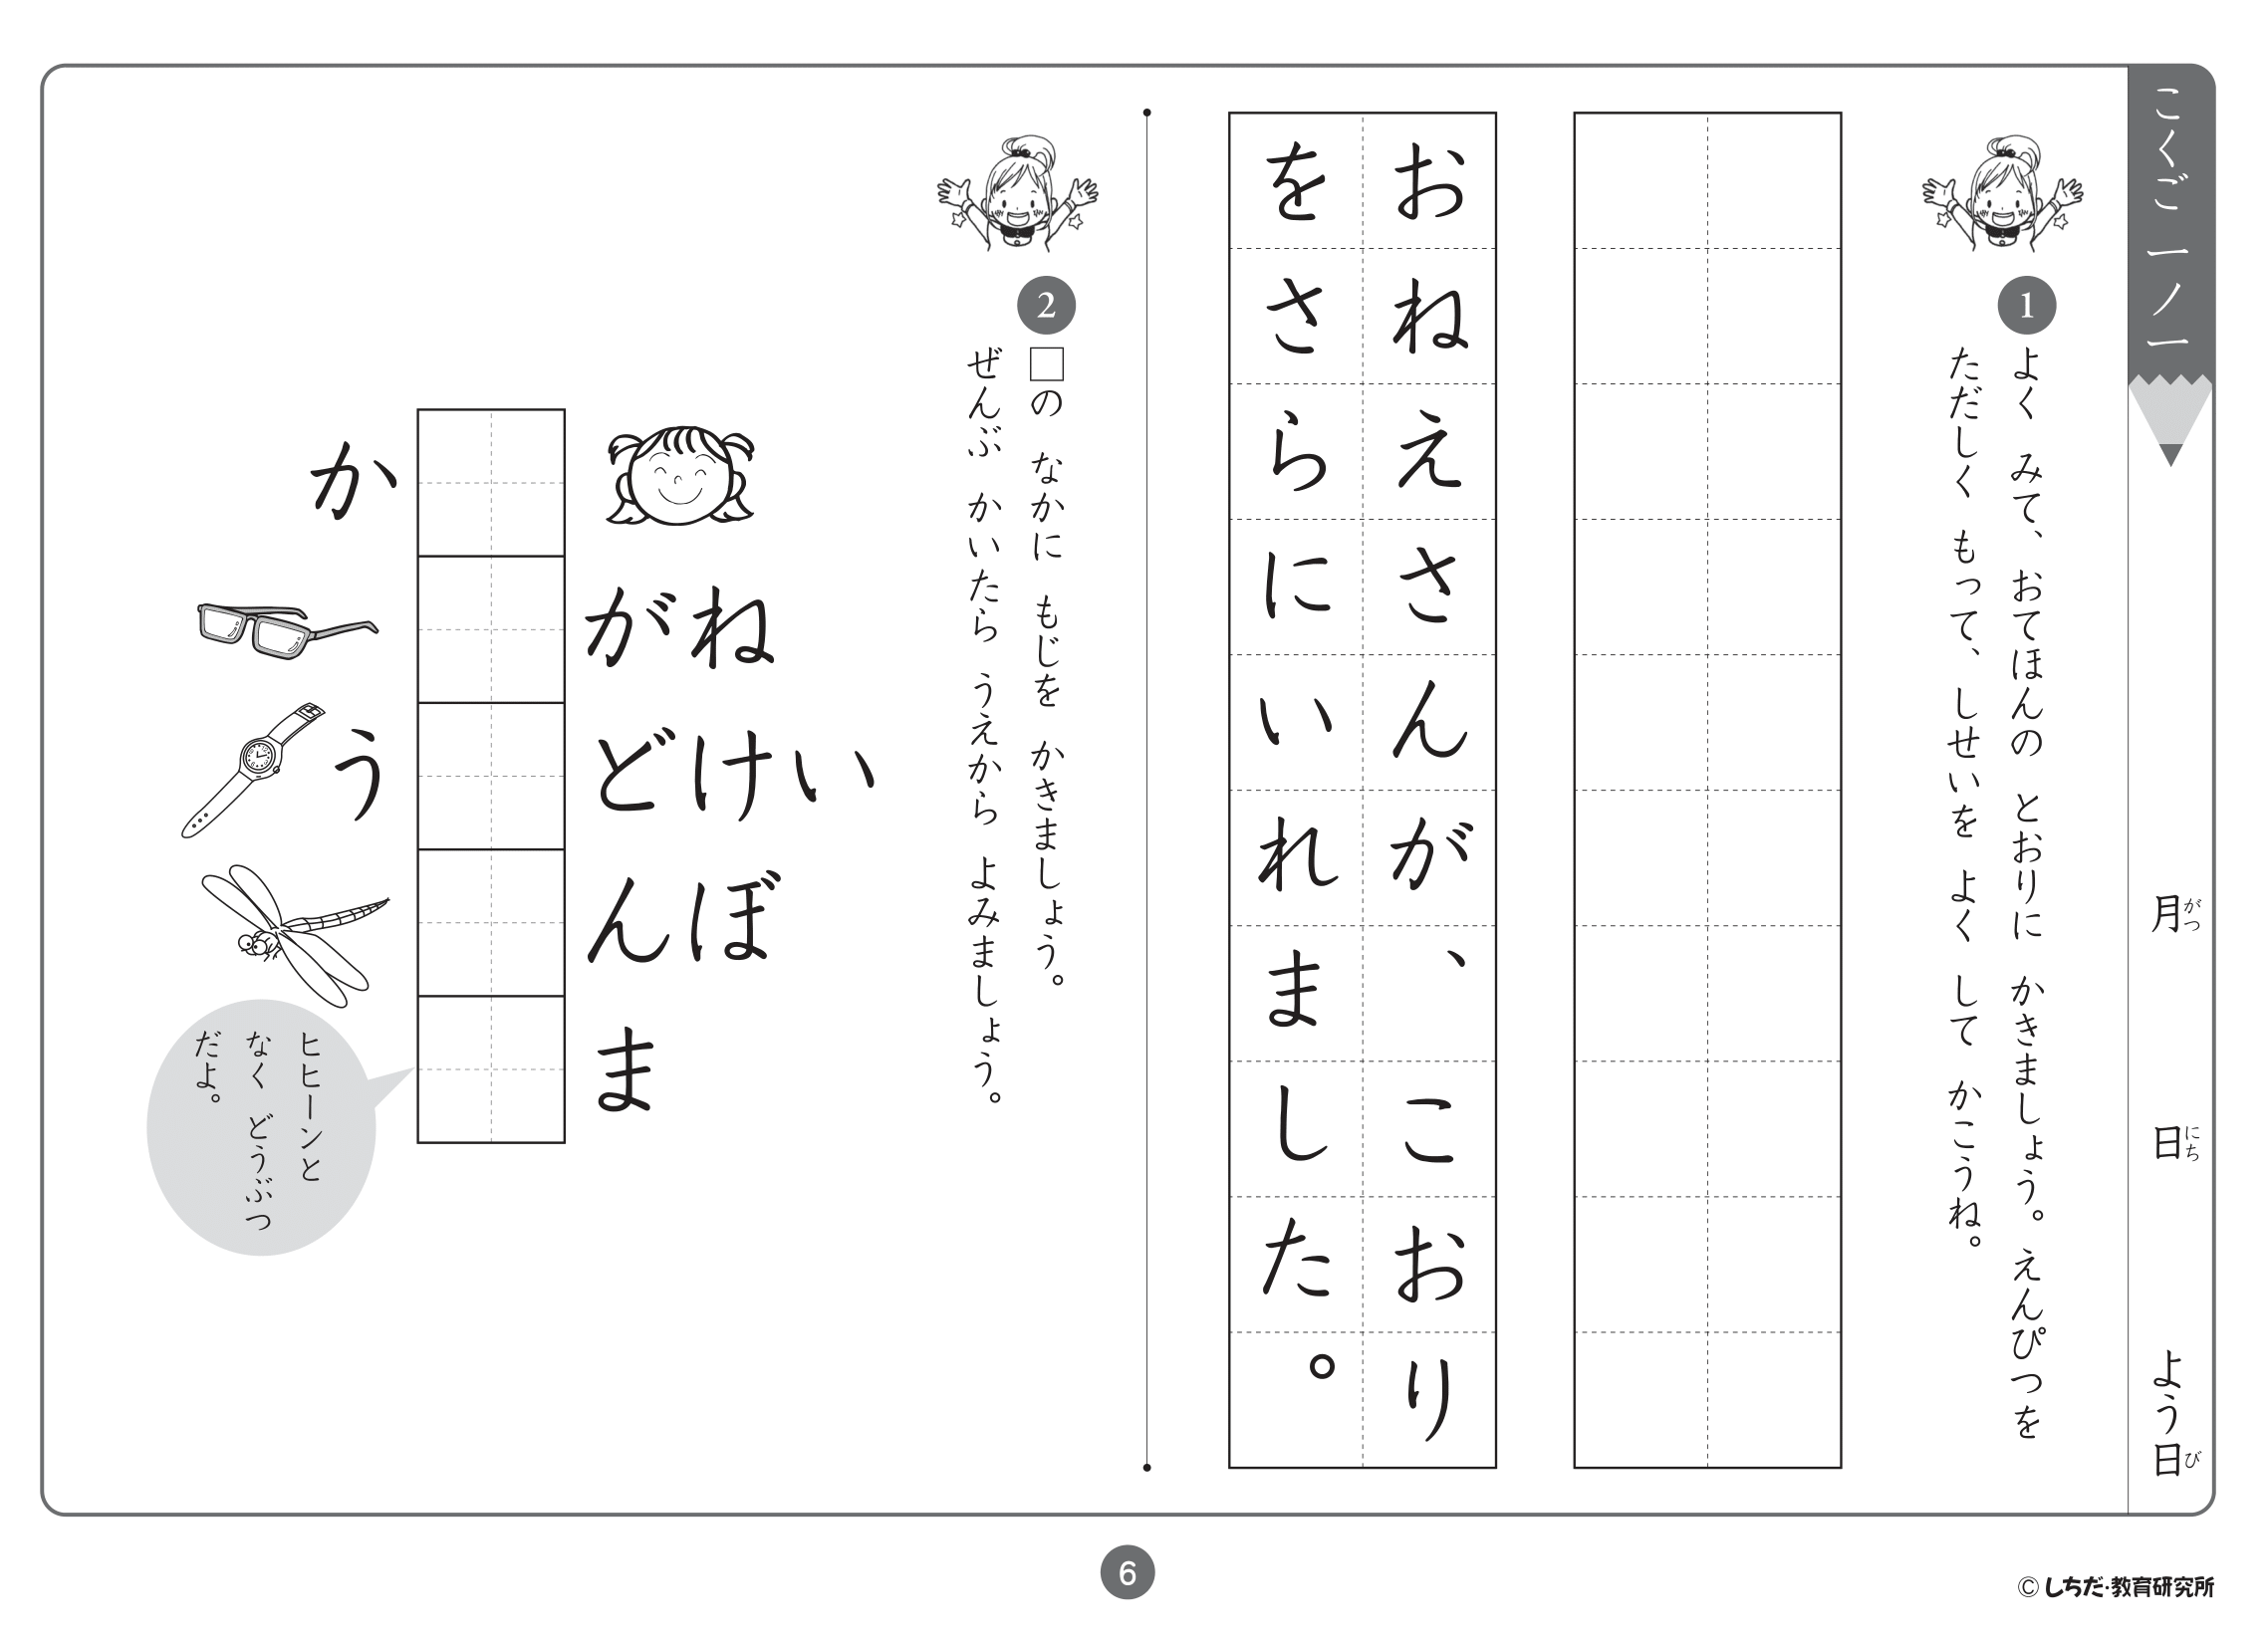 七田式小学生プリント1年生「思考力国語」「思考力算数」 - 知育玩具